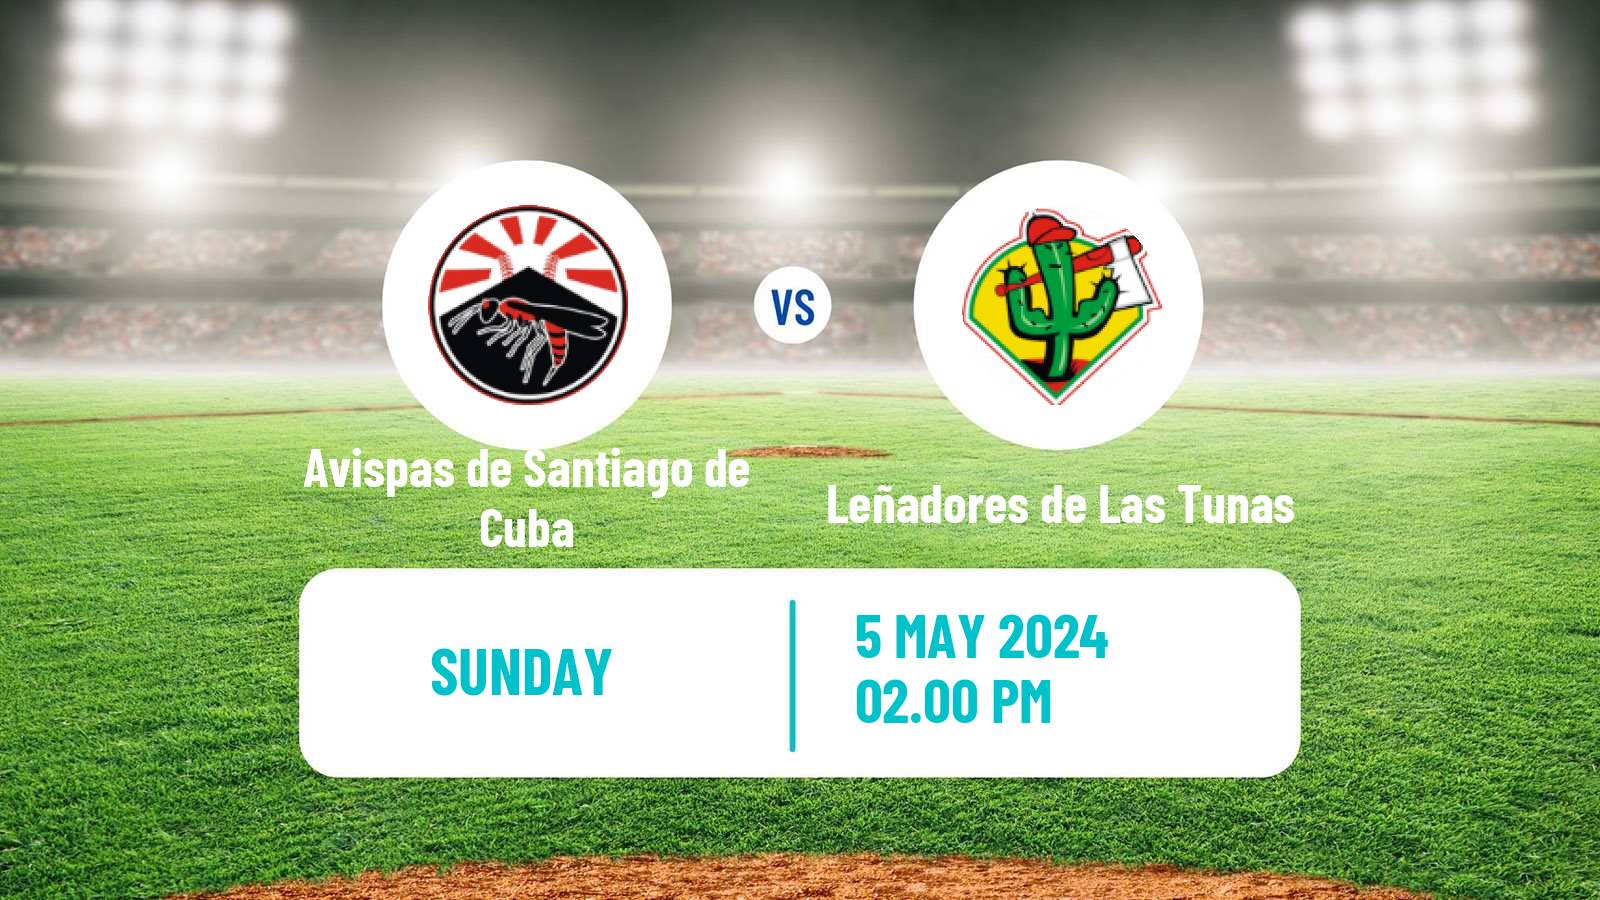 Baseball Cuba Serie Nacional Baseball Avispas de Santiago de Cuba - Leñadores de Las Tunas